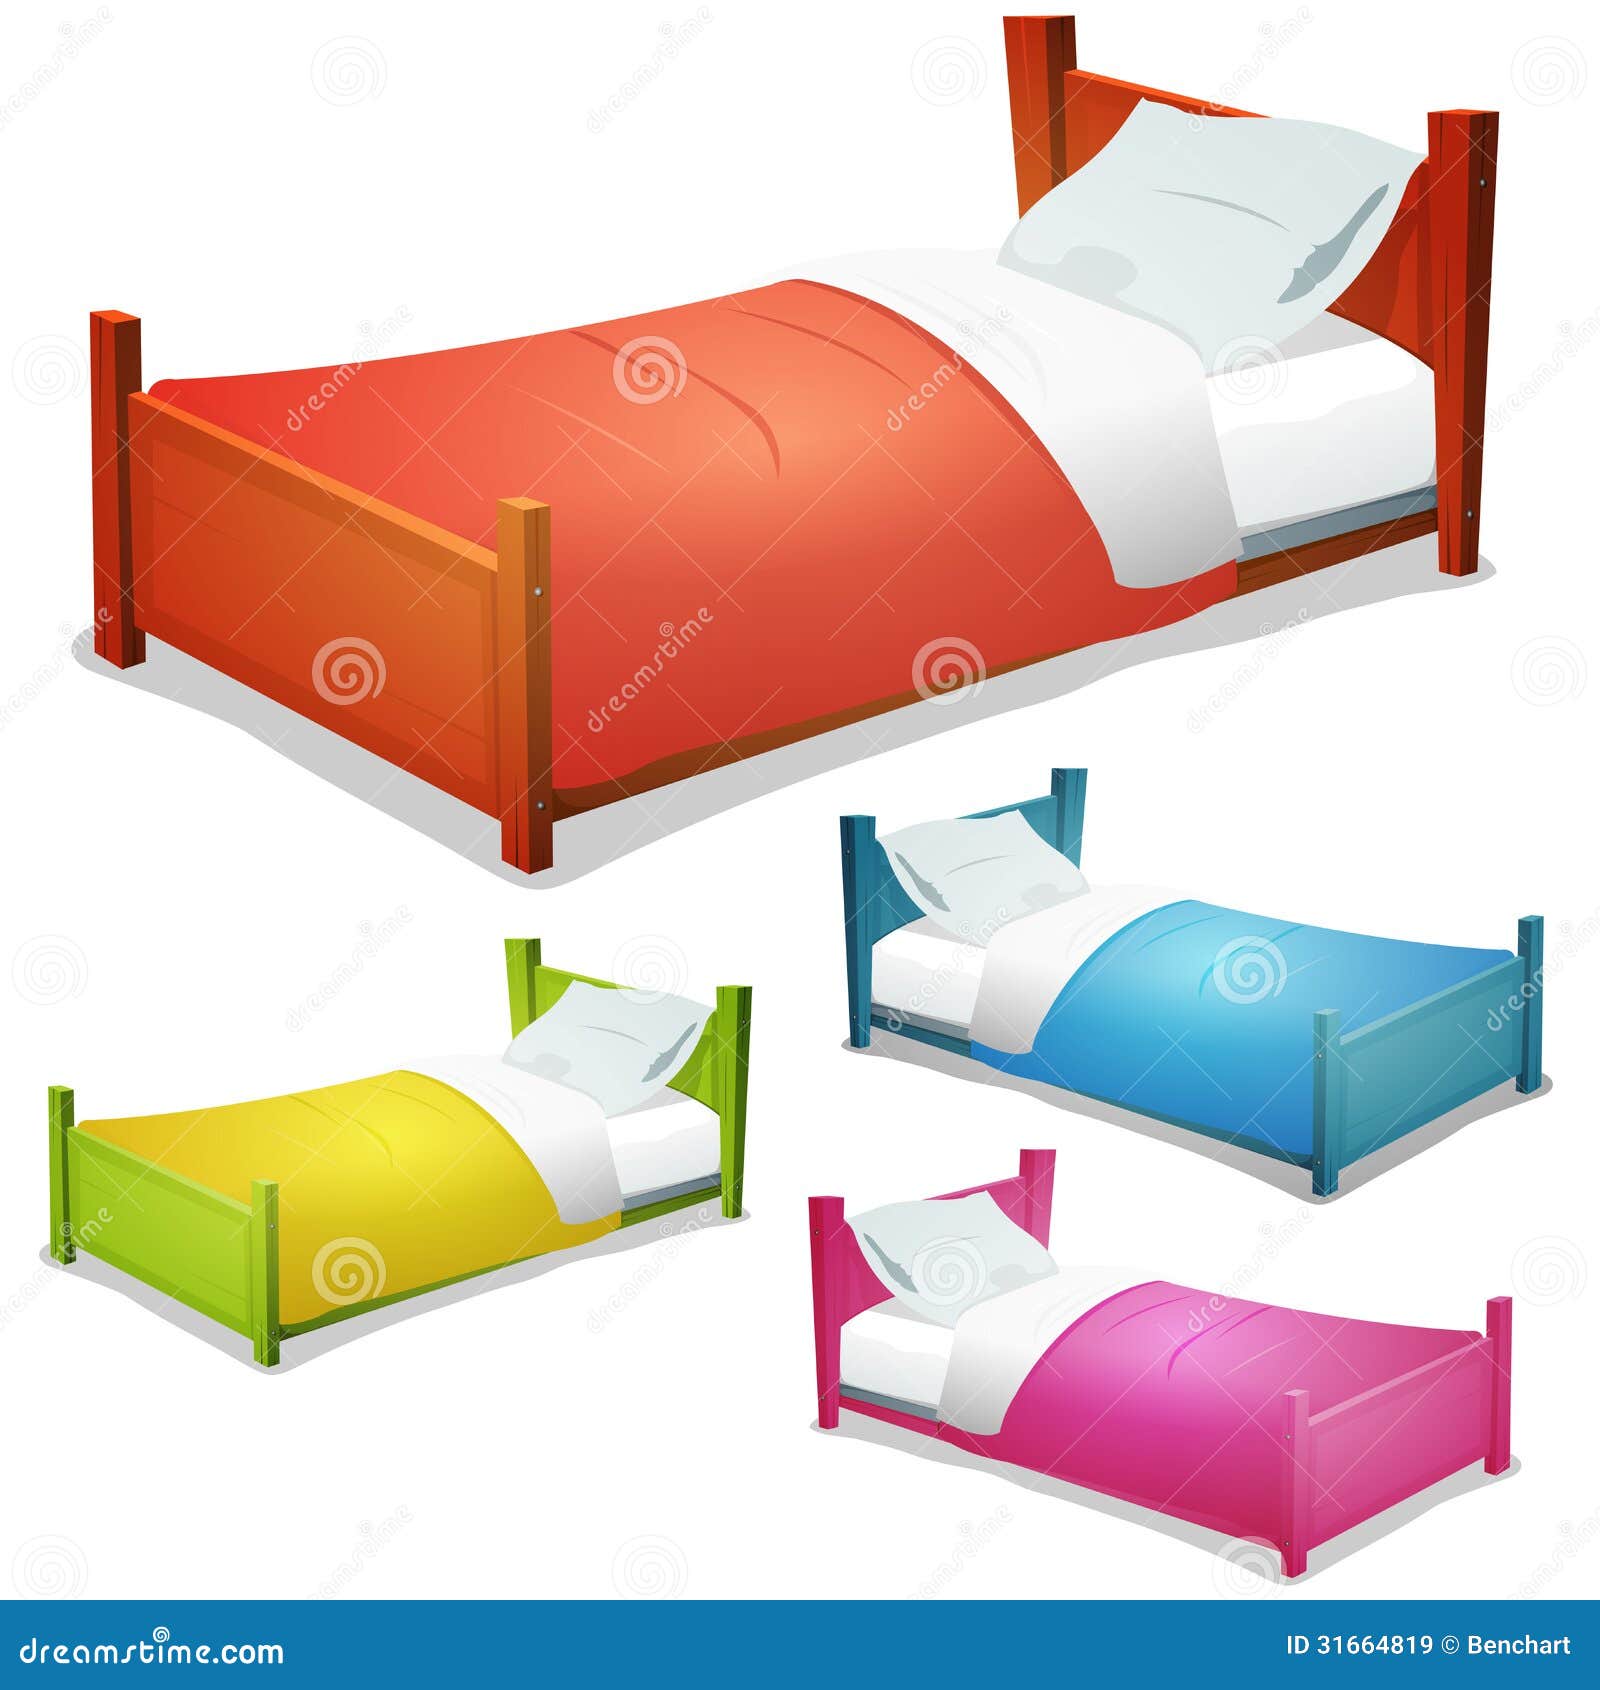 cartoon-bed-set-illustration-wood-children-beds-boys-girls-pillows ...